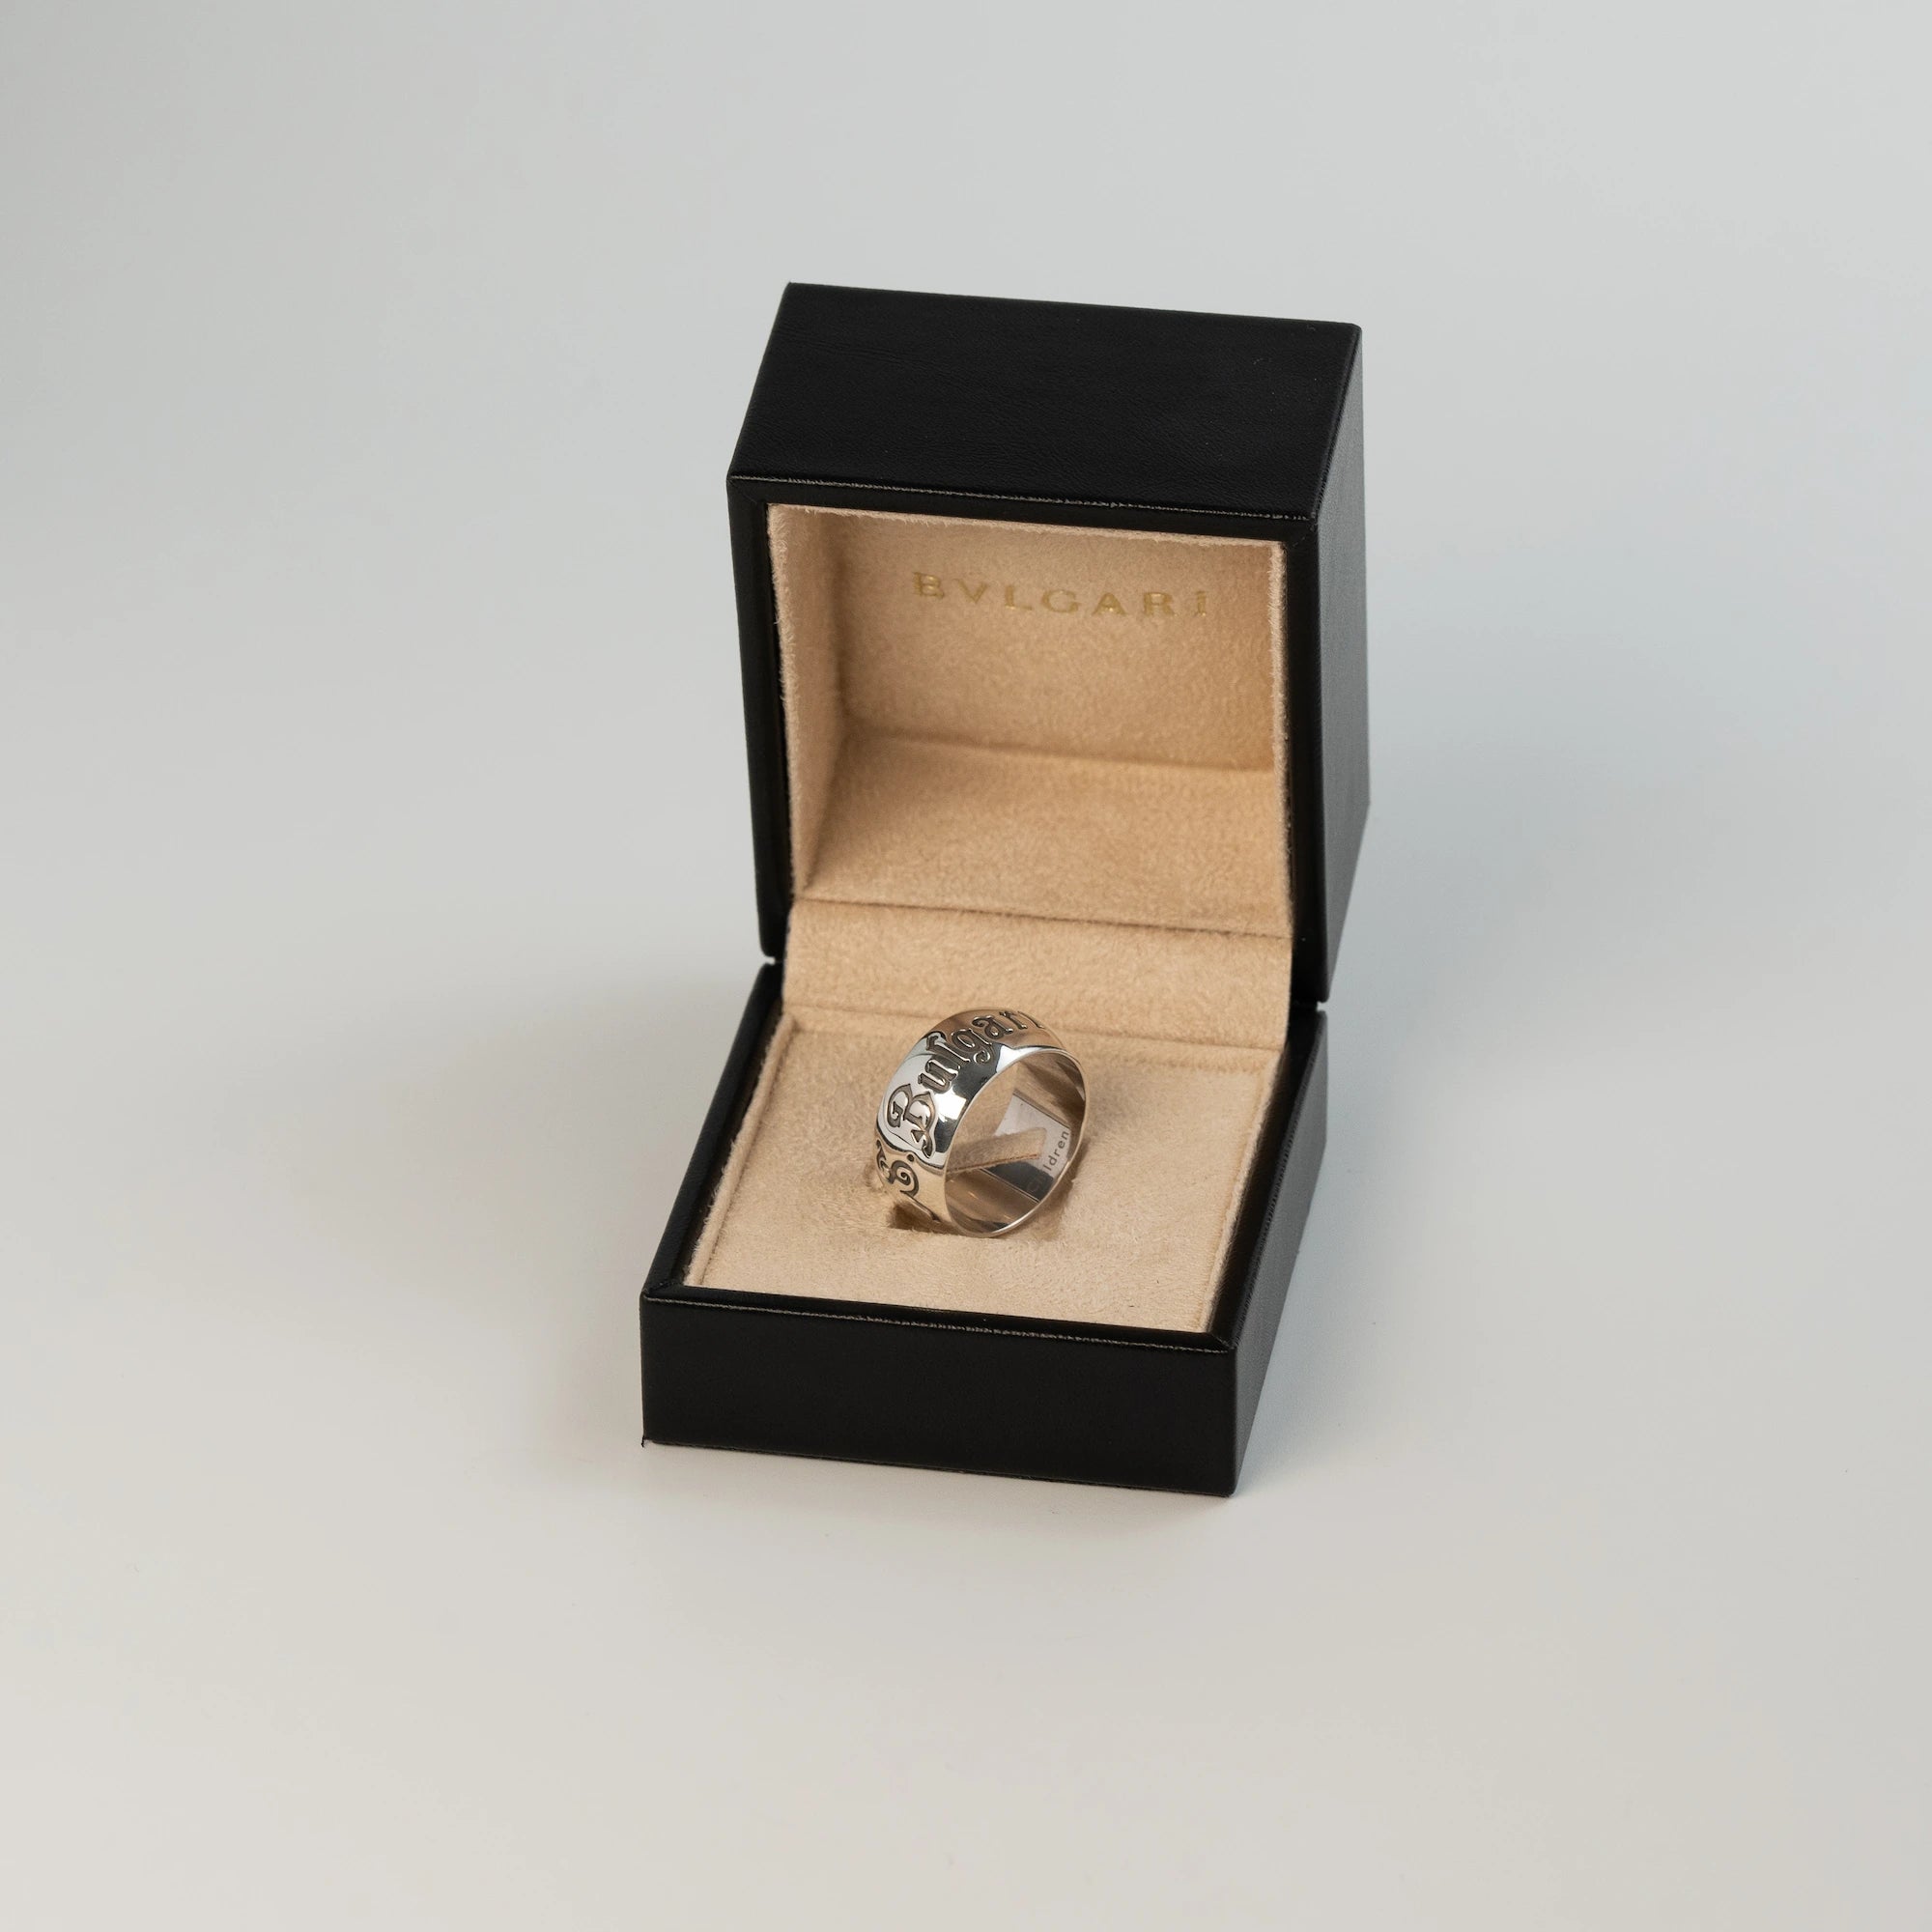 Produktfotografie zeigt den Bulgari Rings "Save The Children" in Silber in der originalen Schmuck-Box zum Klappen